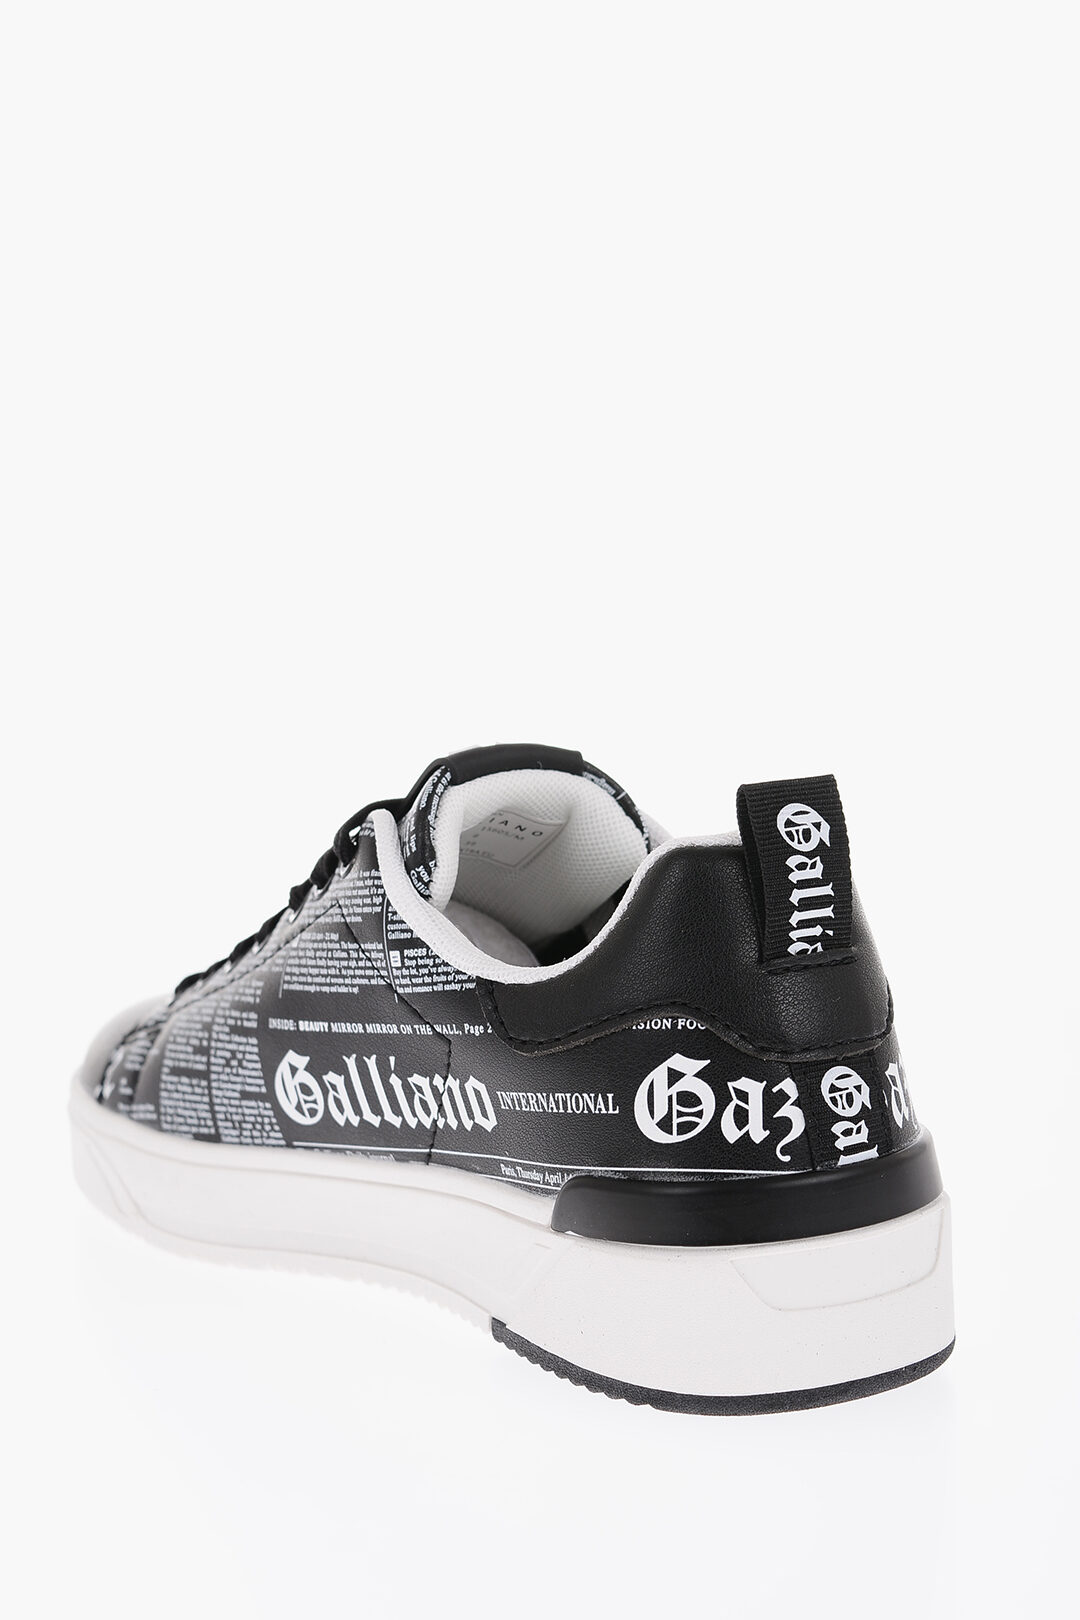 John Galliano Sneakers